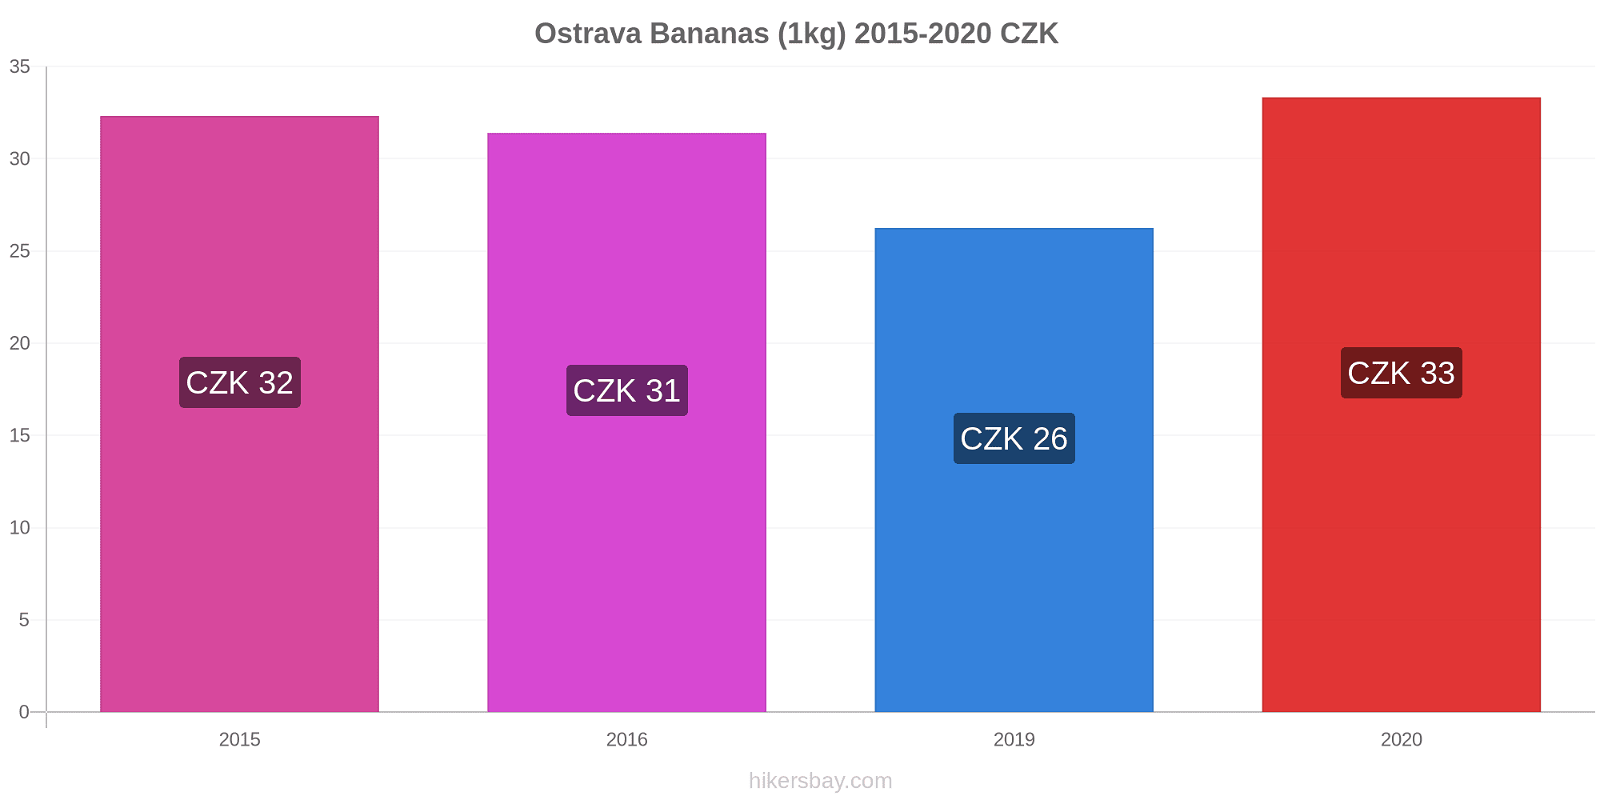 Ostrava variação de preço Banana (1kg) hikersbay.com